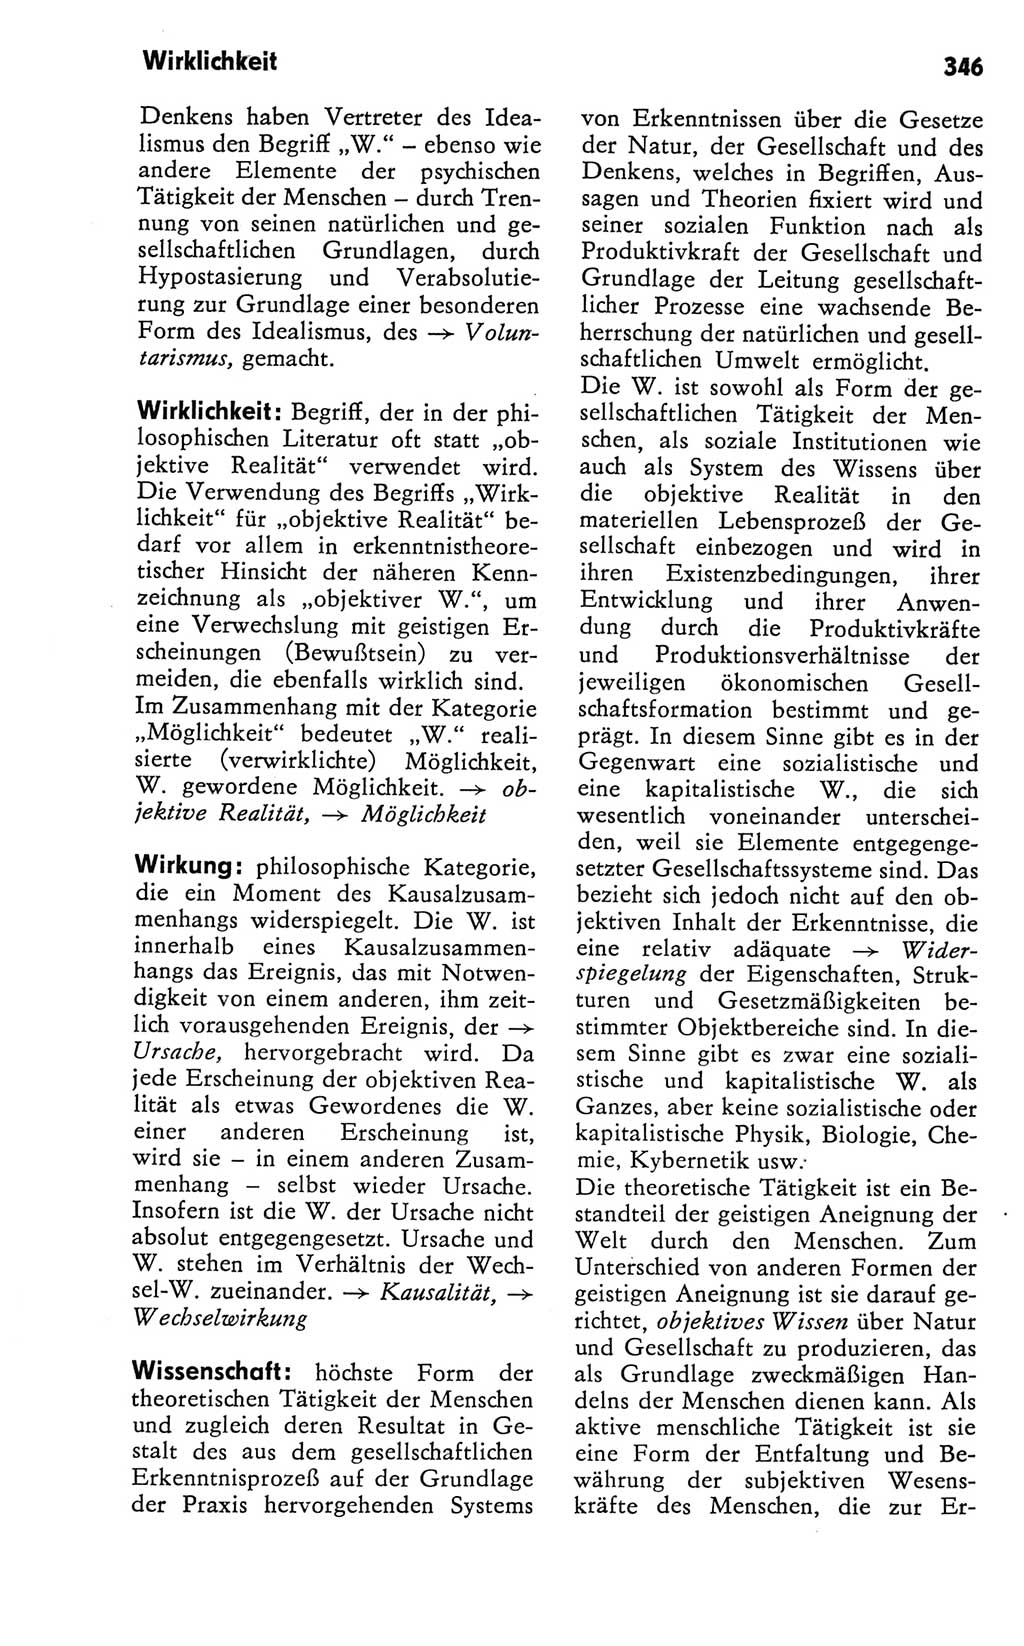 Kleines Wörterbuch der marxistisch-leninistischen Philosophie [Deutsche Demokratische Republik (DDR)] 1981, Seite 346 (Kl. Wb. ML Phil. DDR 1981, S. 346)